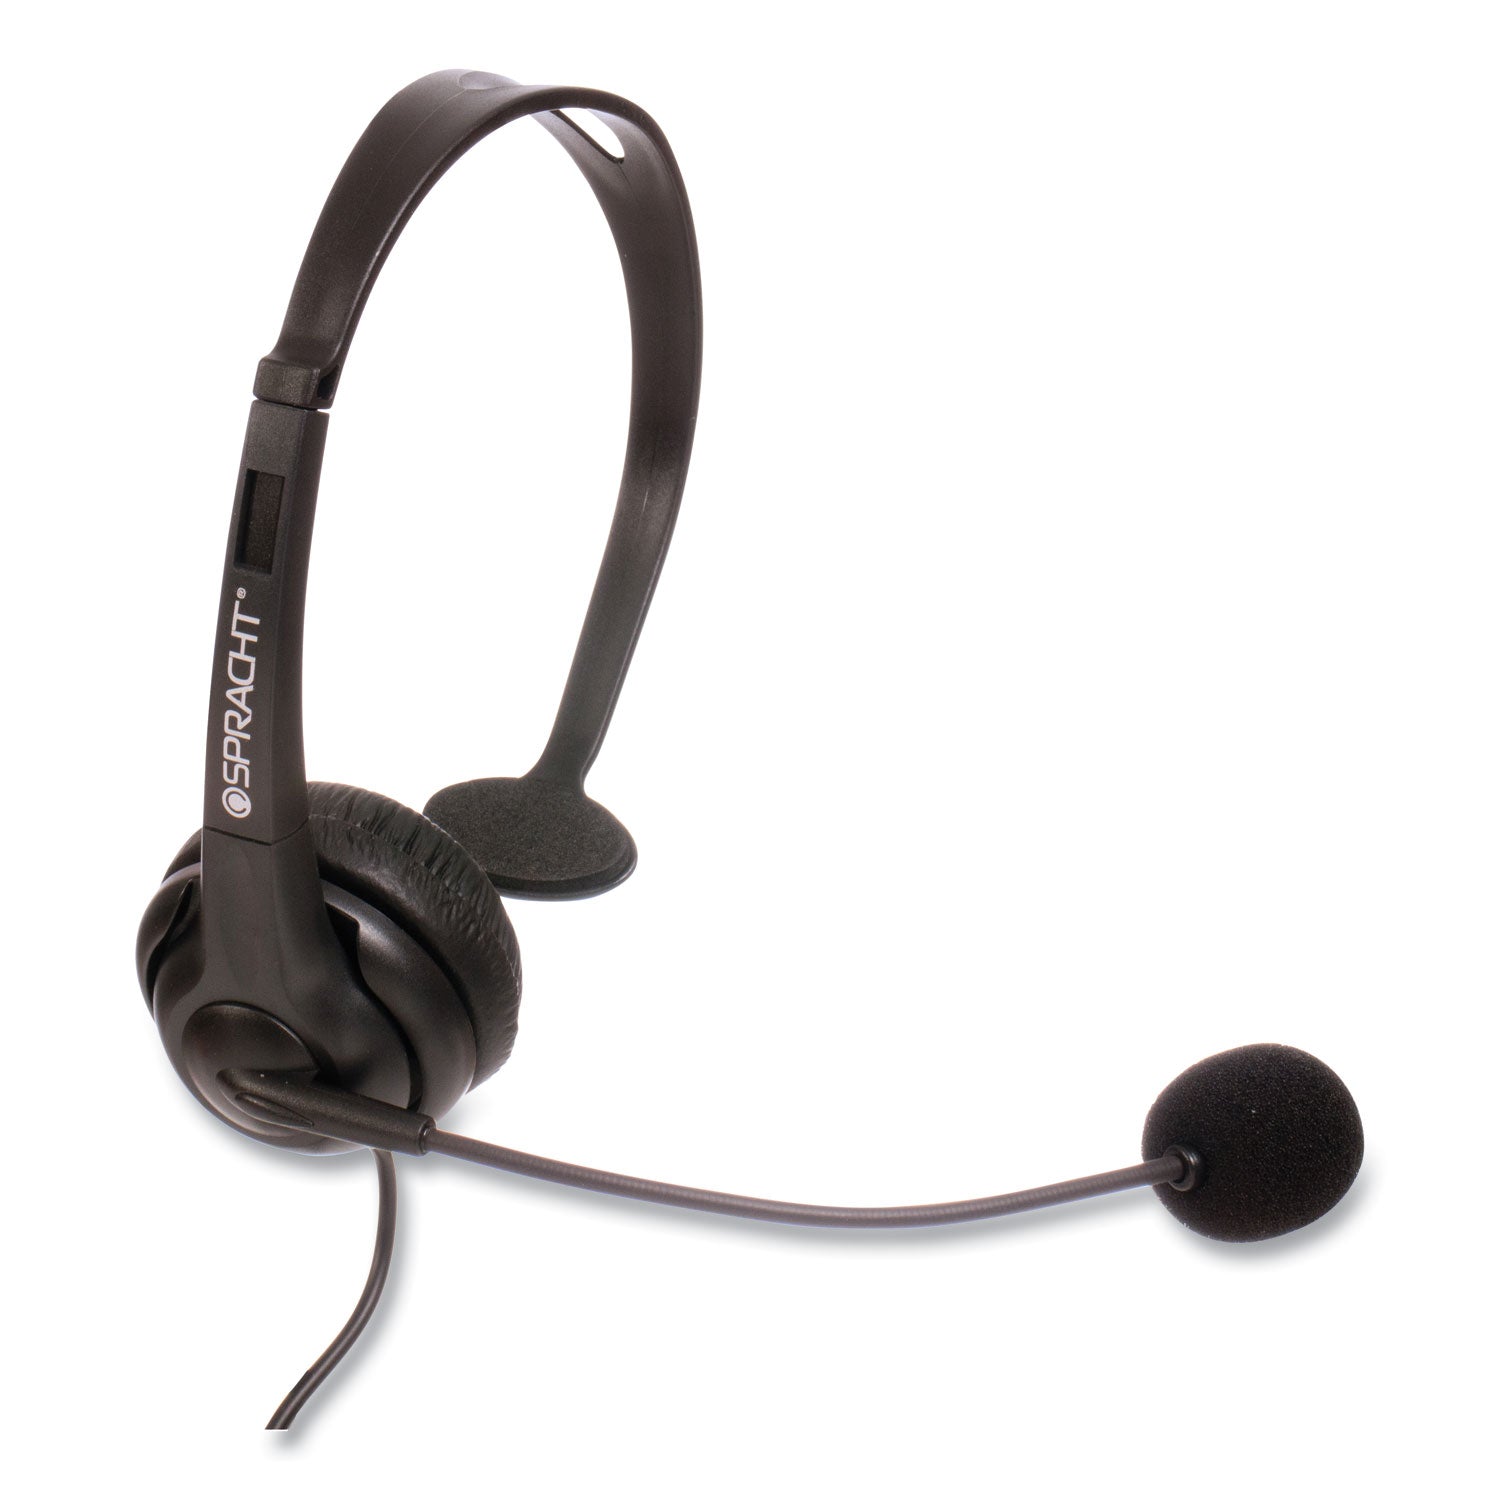 zum-zum350m-monaural-over-the-head-headset-black_sptzum350m - 5